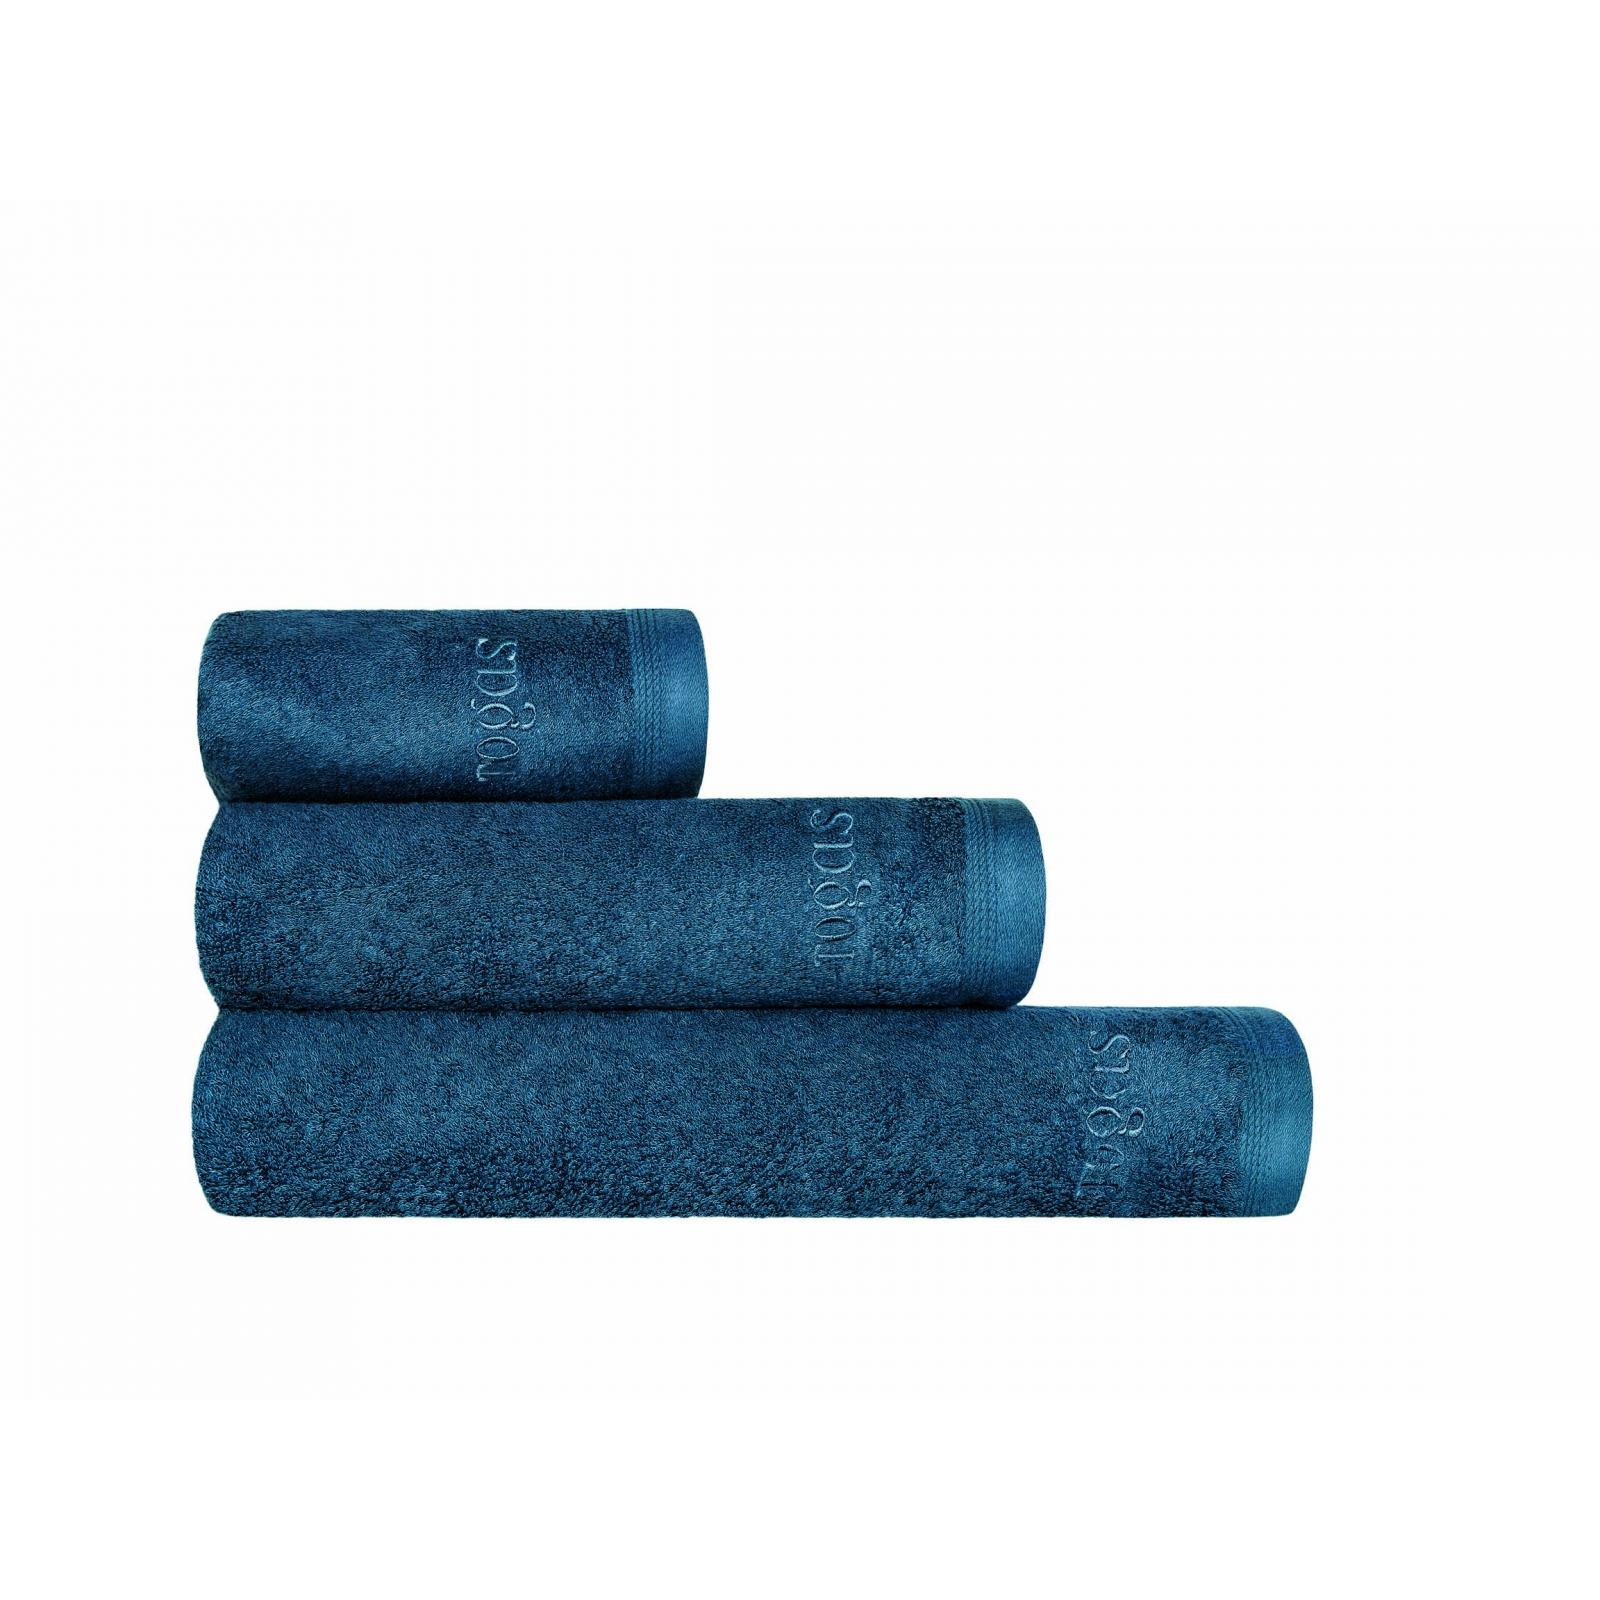 Полотенце Togas Пуатье темно-синее 40х60 см полотенце 40х60 см пуатье сливовое togas